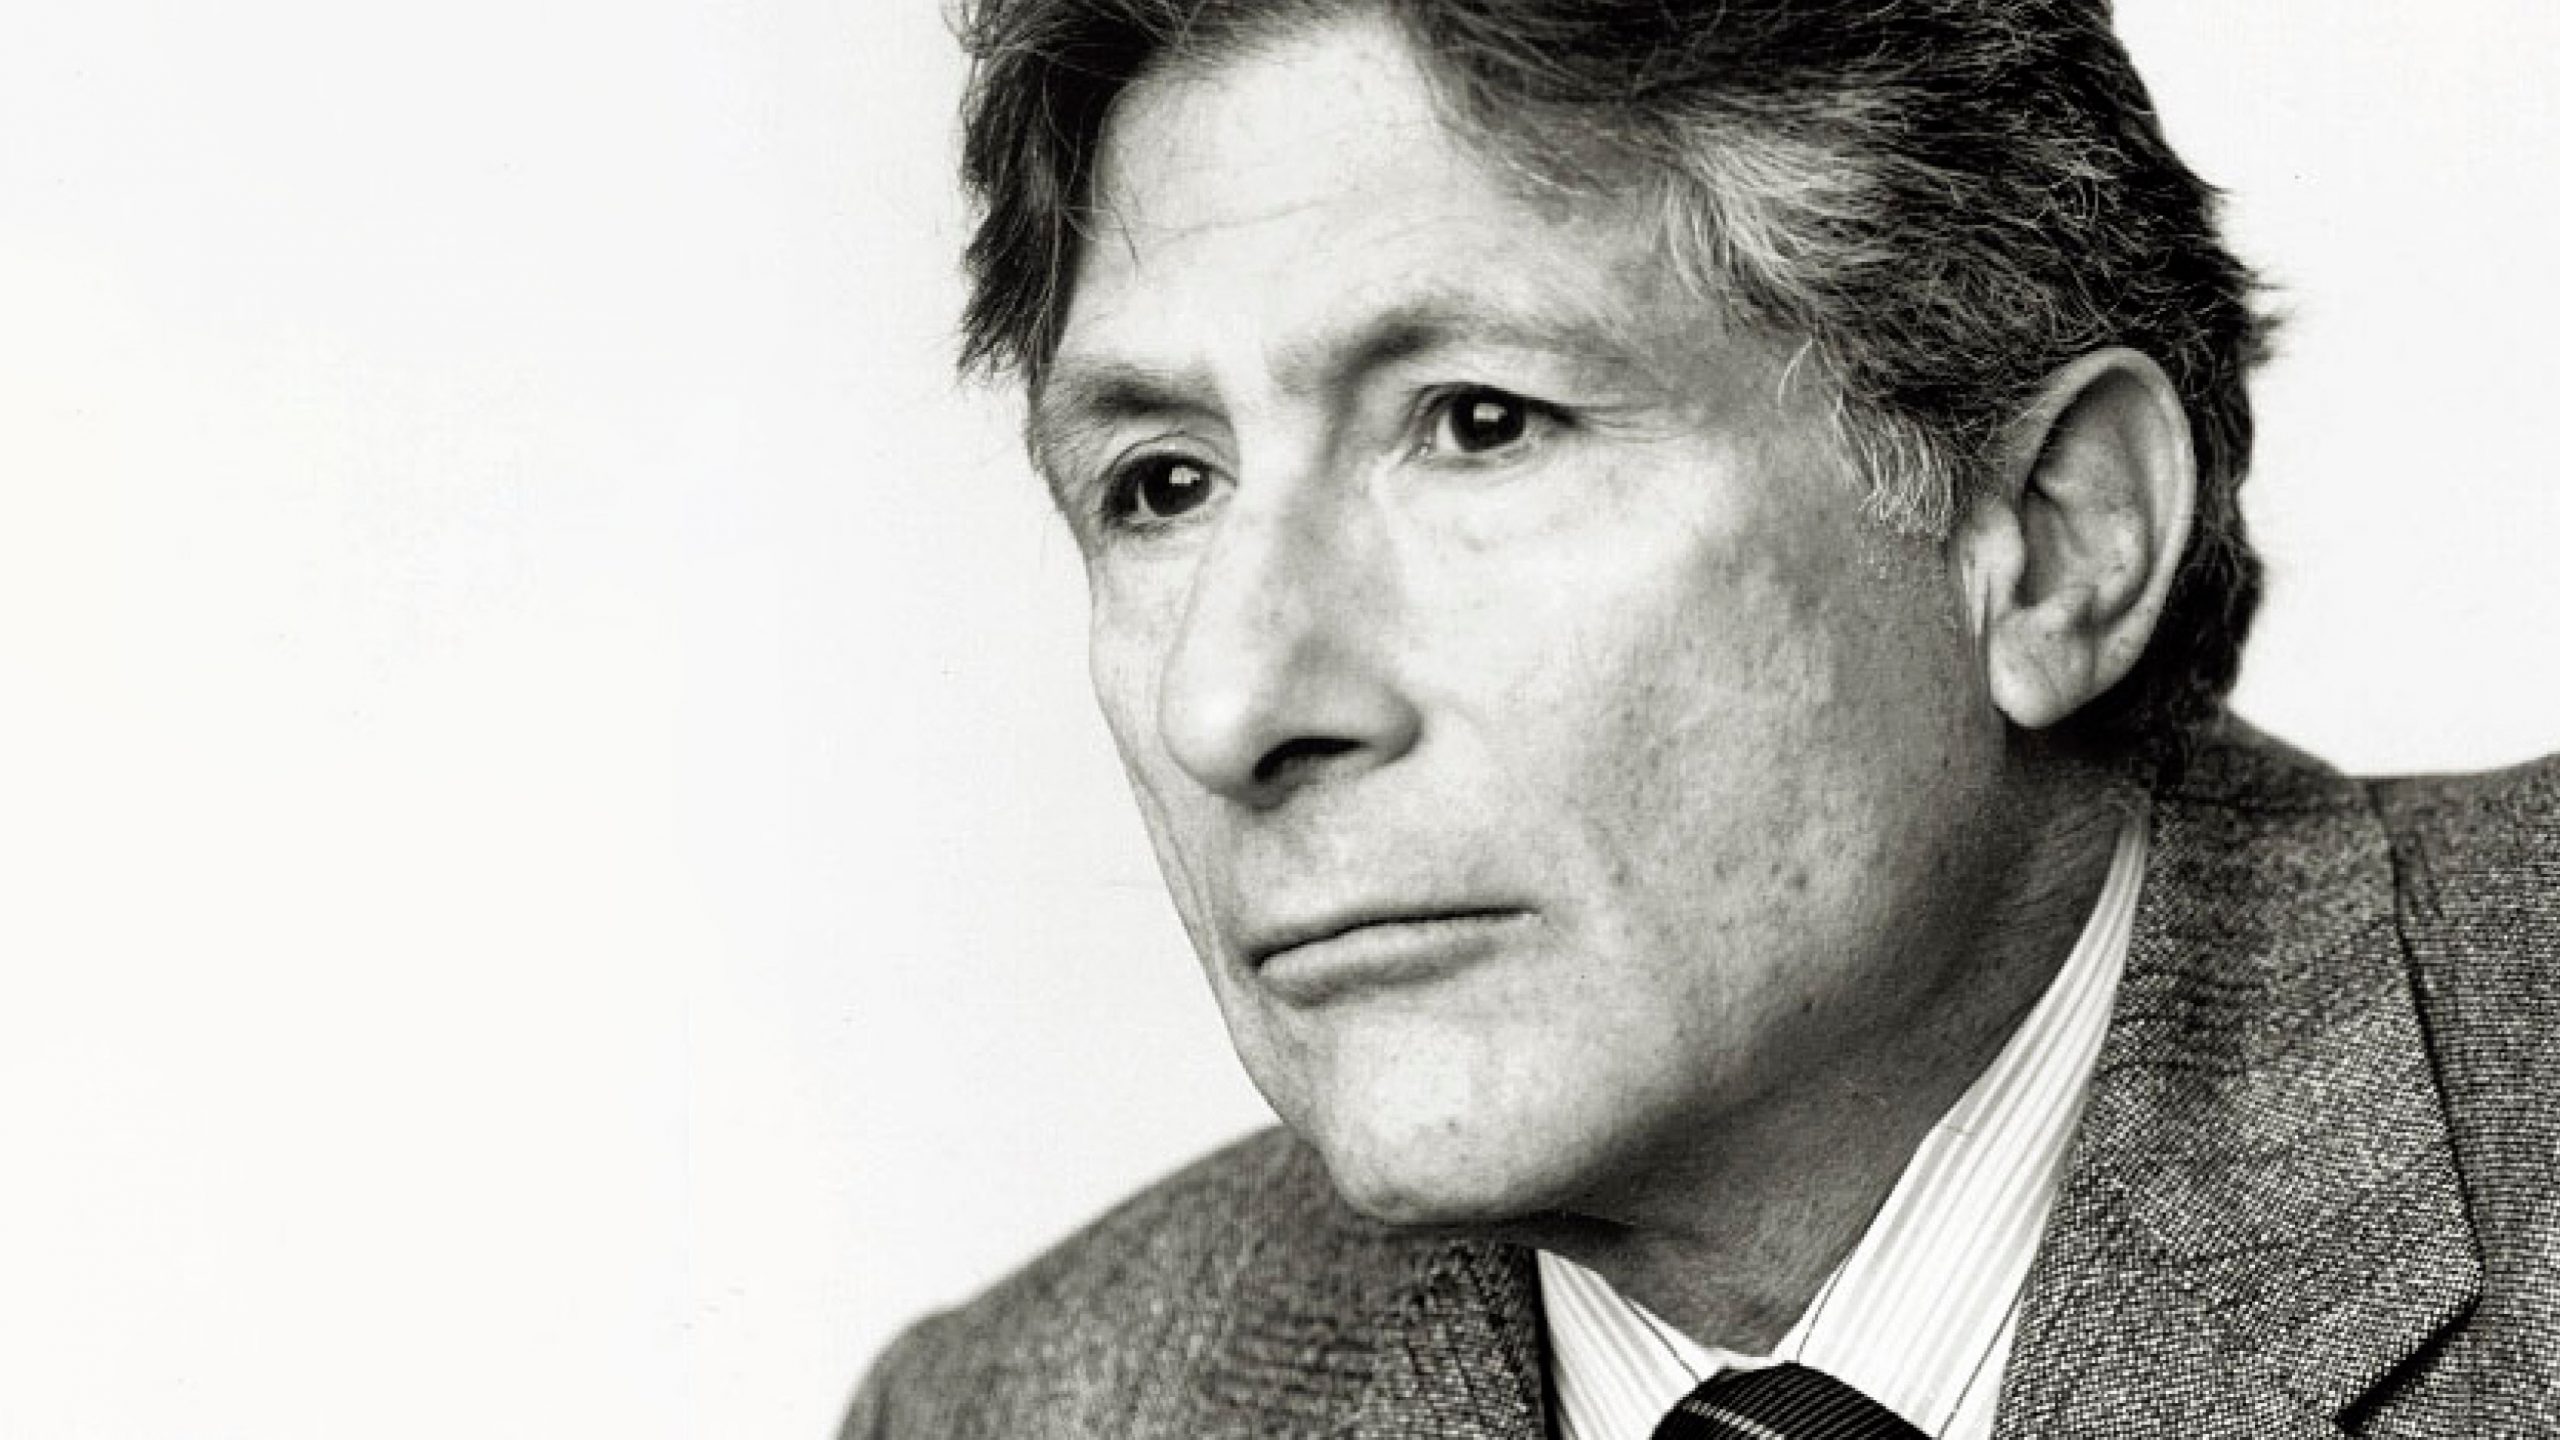 Estante Cult | Grande humanista e pensador das culturas, Edward Said foi a voz mais lúcida da questão palestina